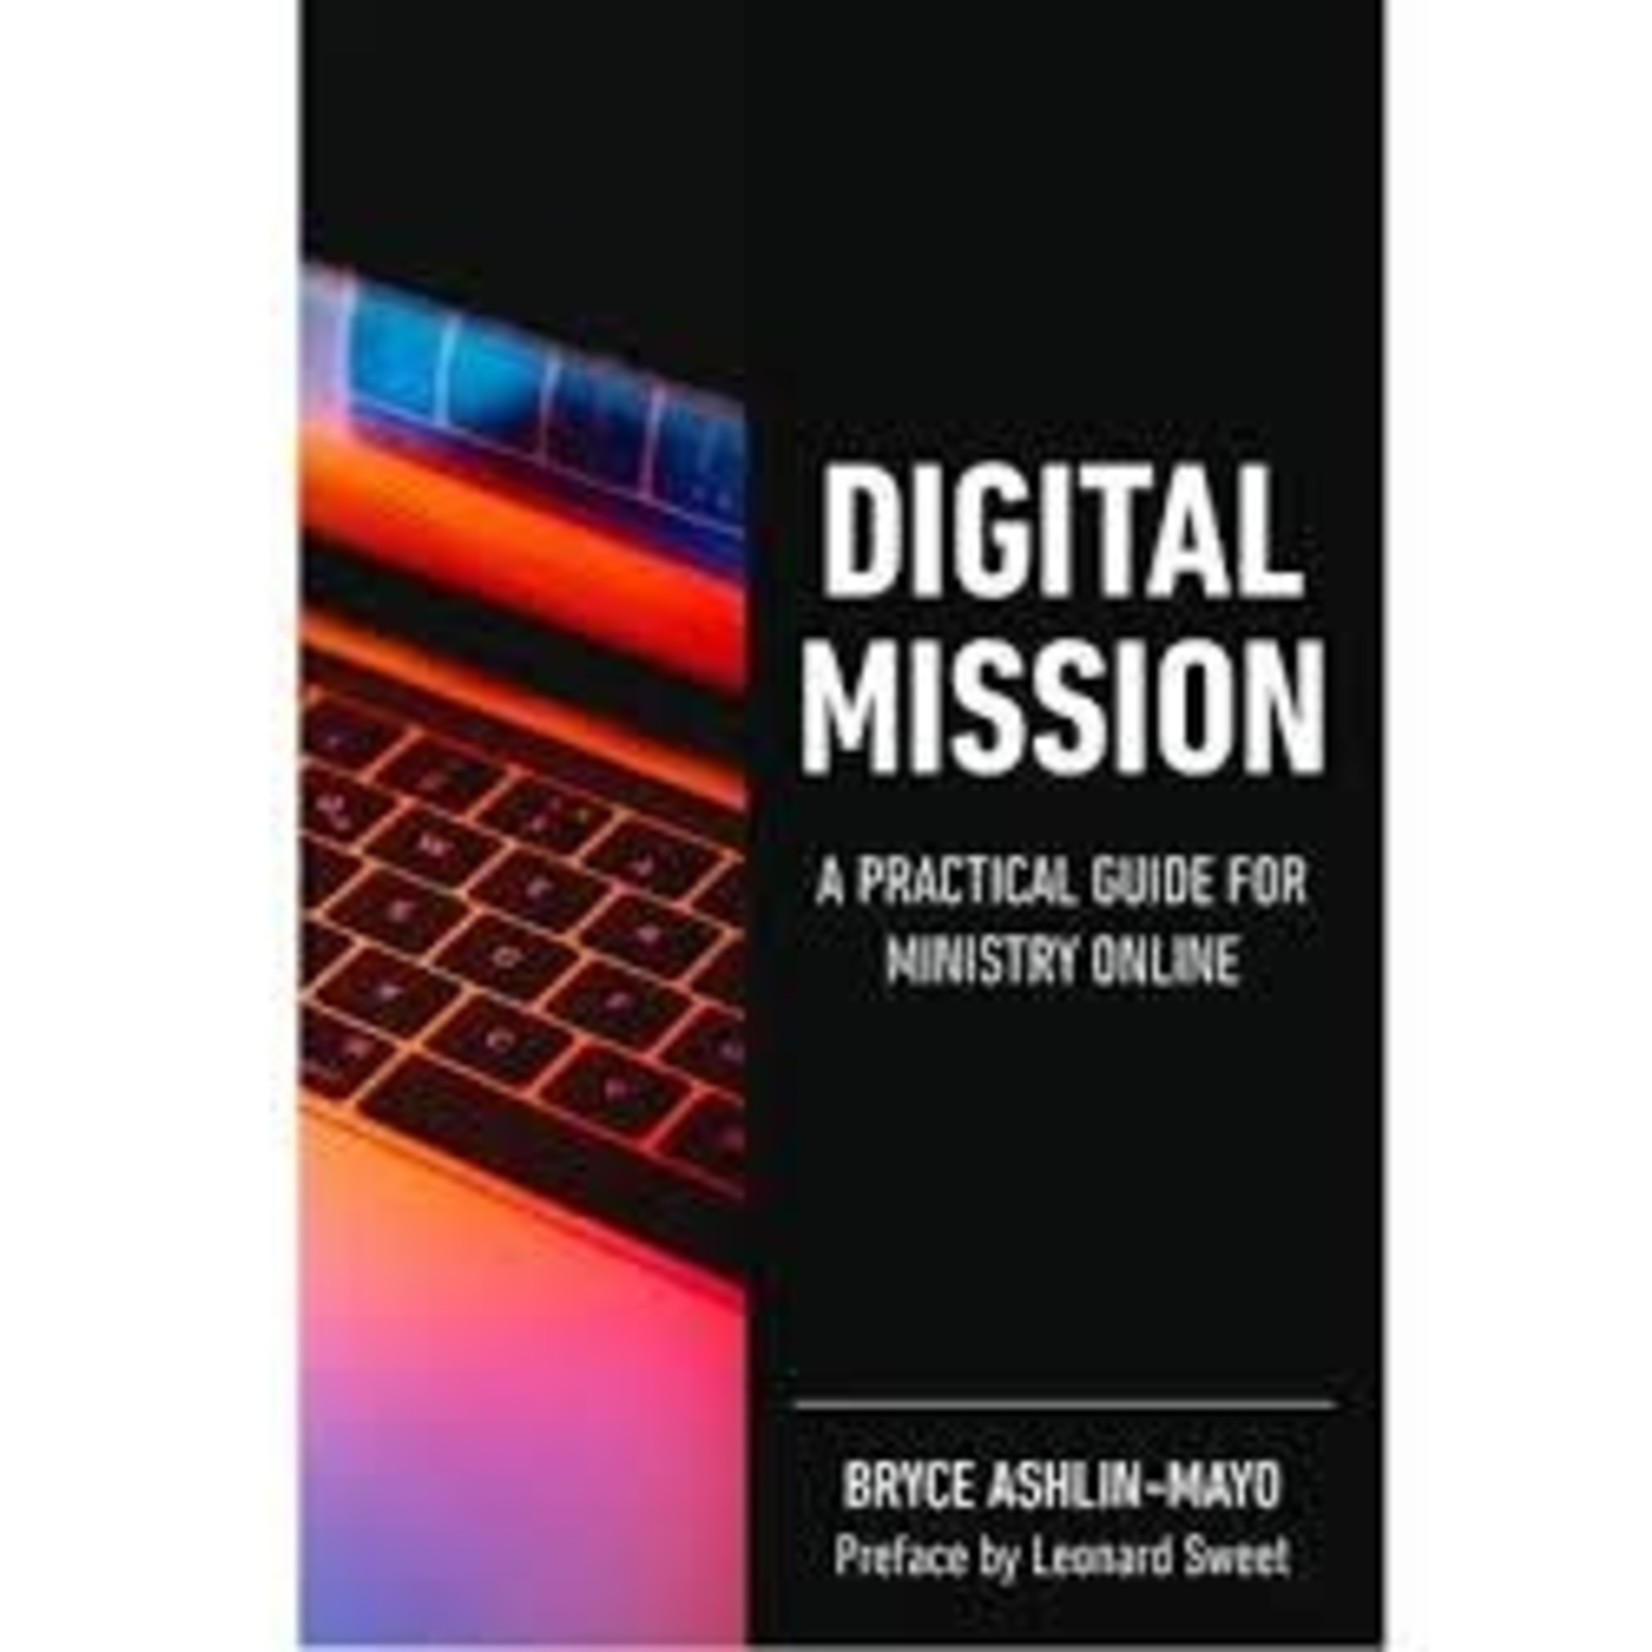 Digital Mission - Bryce Ashlin-Mayo